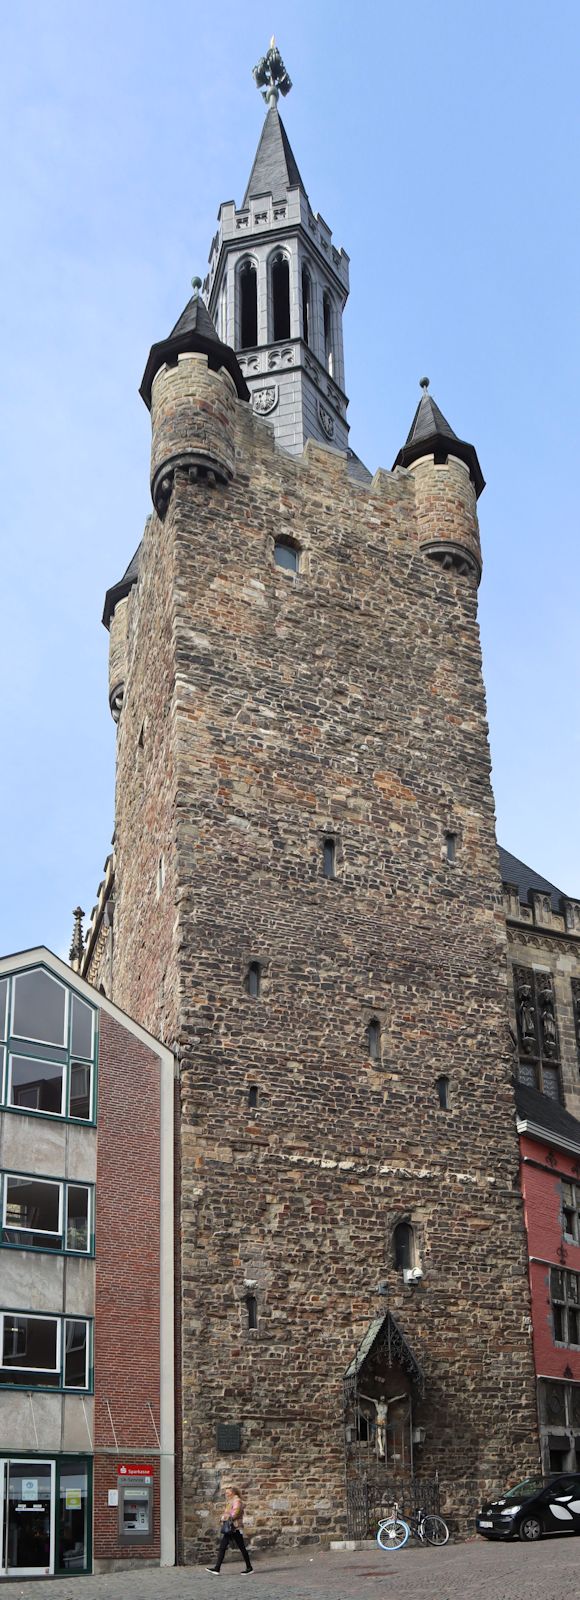 „Granusturm”, verbleibener originaler Rest der früheren Kaiserpfalz an der Stelle des heutigen Rathauses in Aachen